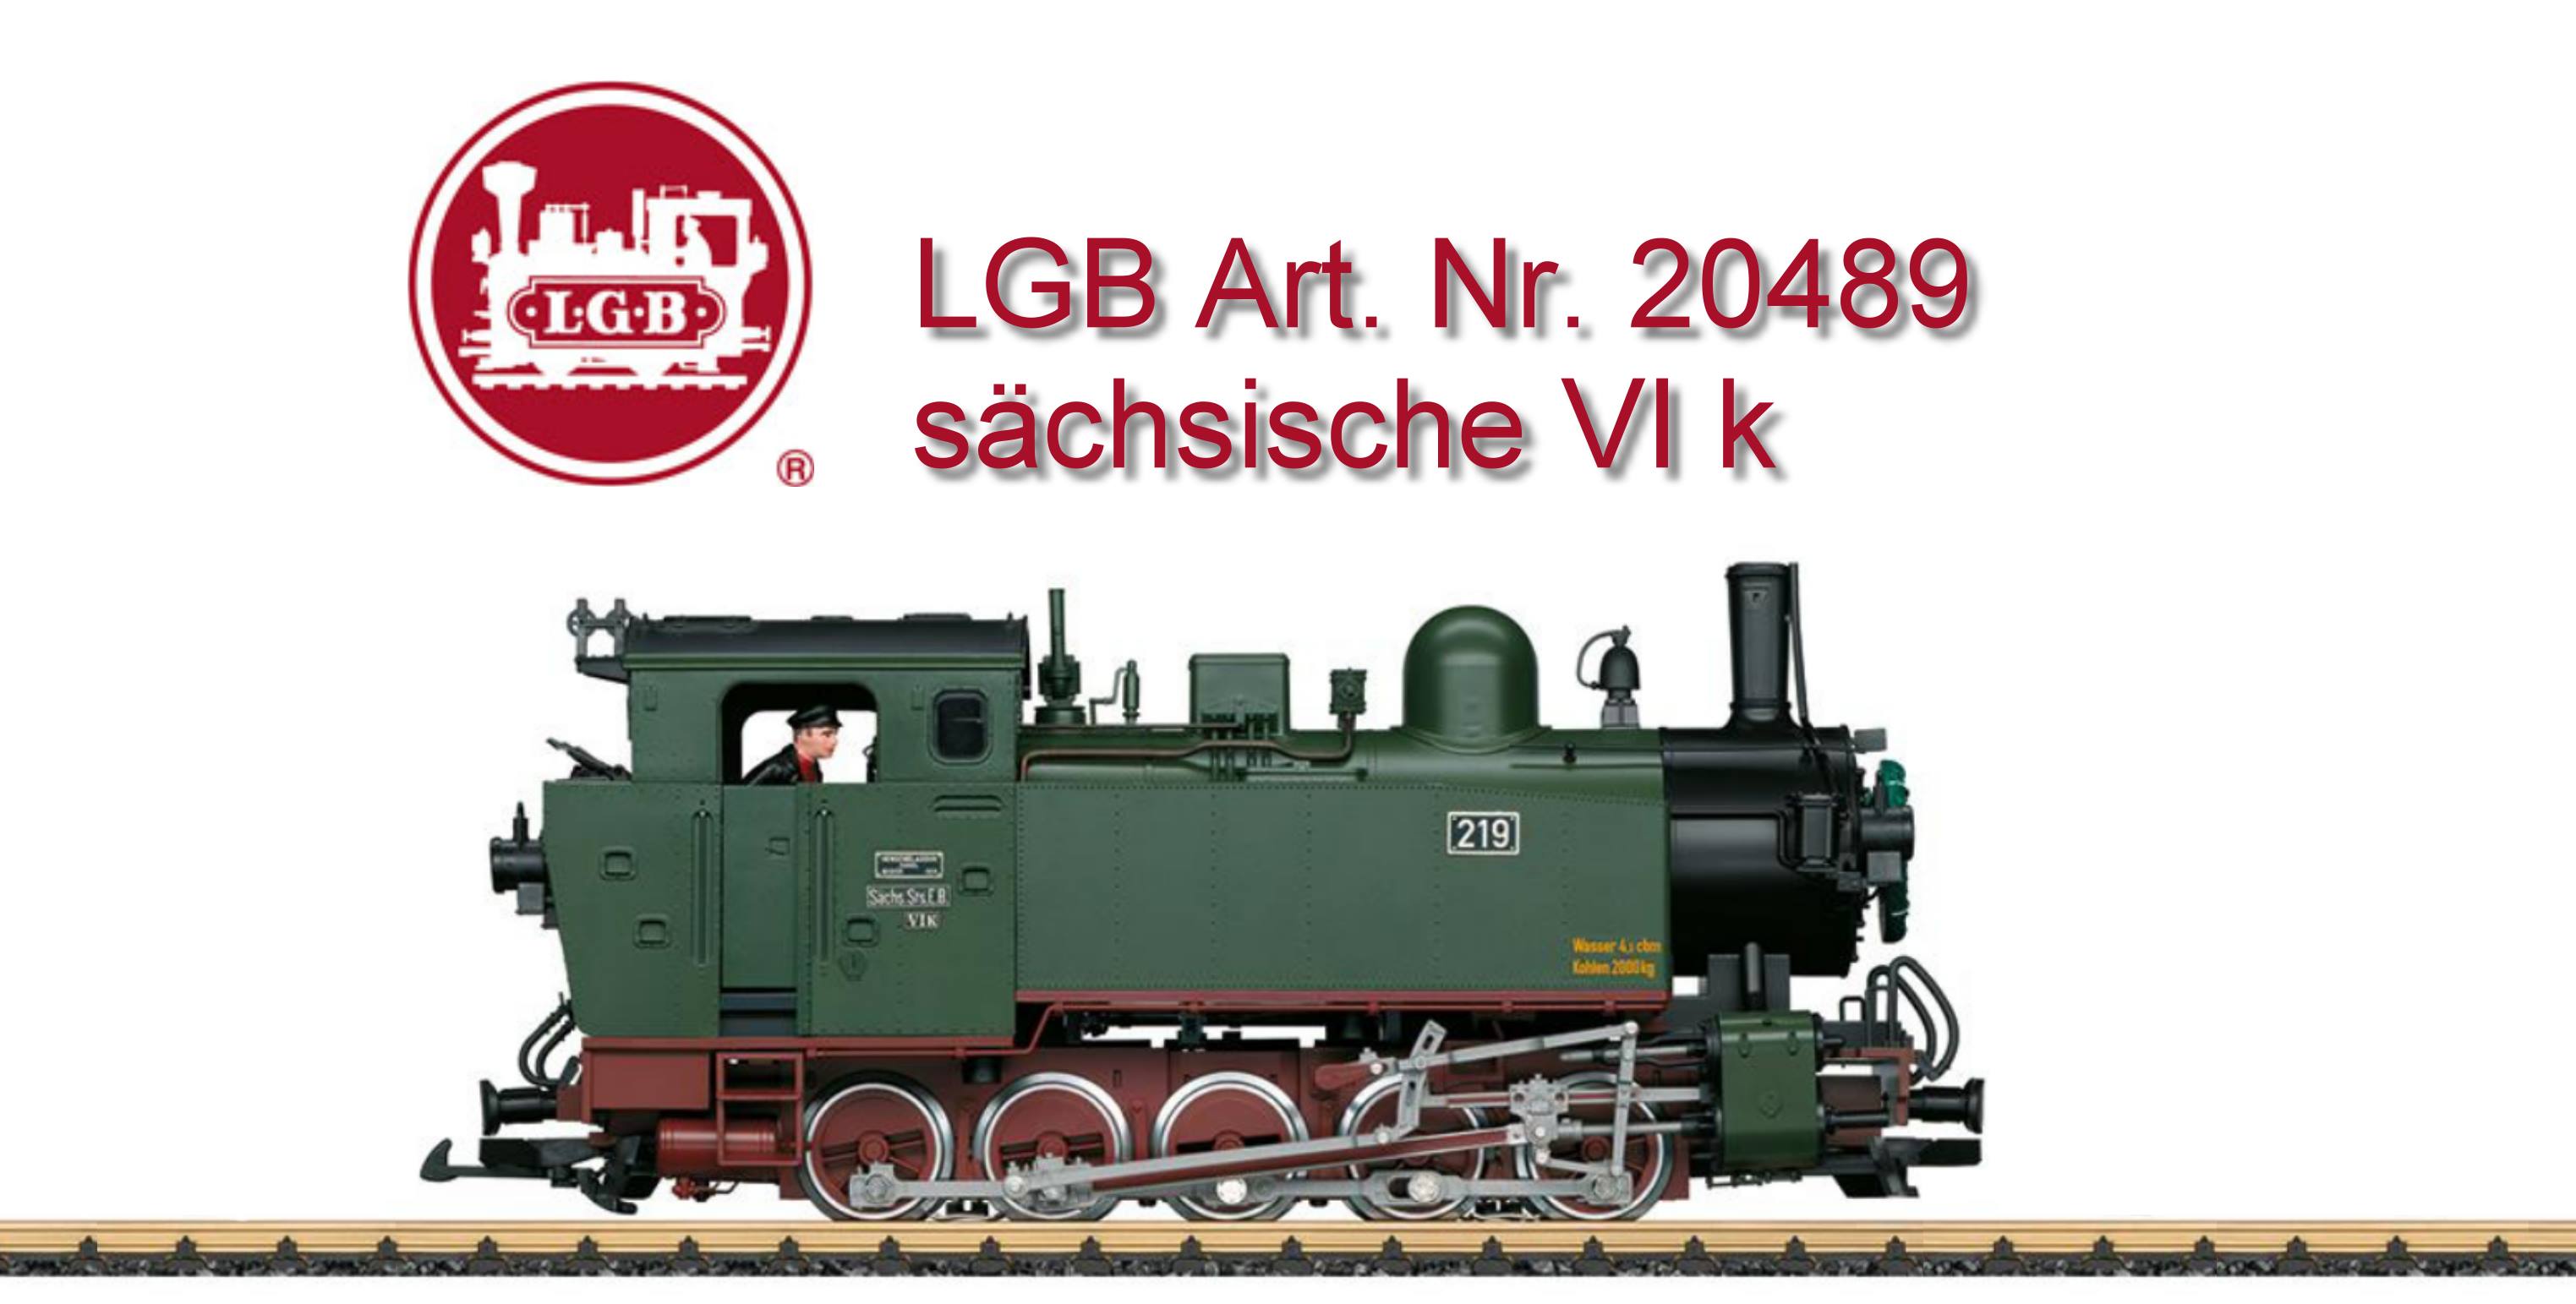  Basis L20481, mit tzschildern, andere Betriebsnummer als L 20481 - mit Kranz an der Rauchkammertr zur Streckenerffnung - Klingenberg-Colmnitz-Naundorf vor 100 Jahren. Gerninge Stckzahl, nur 60 Stck. 